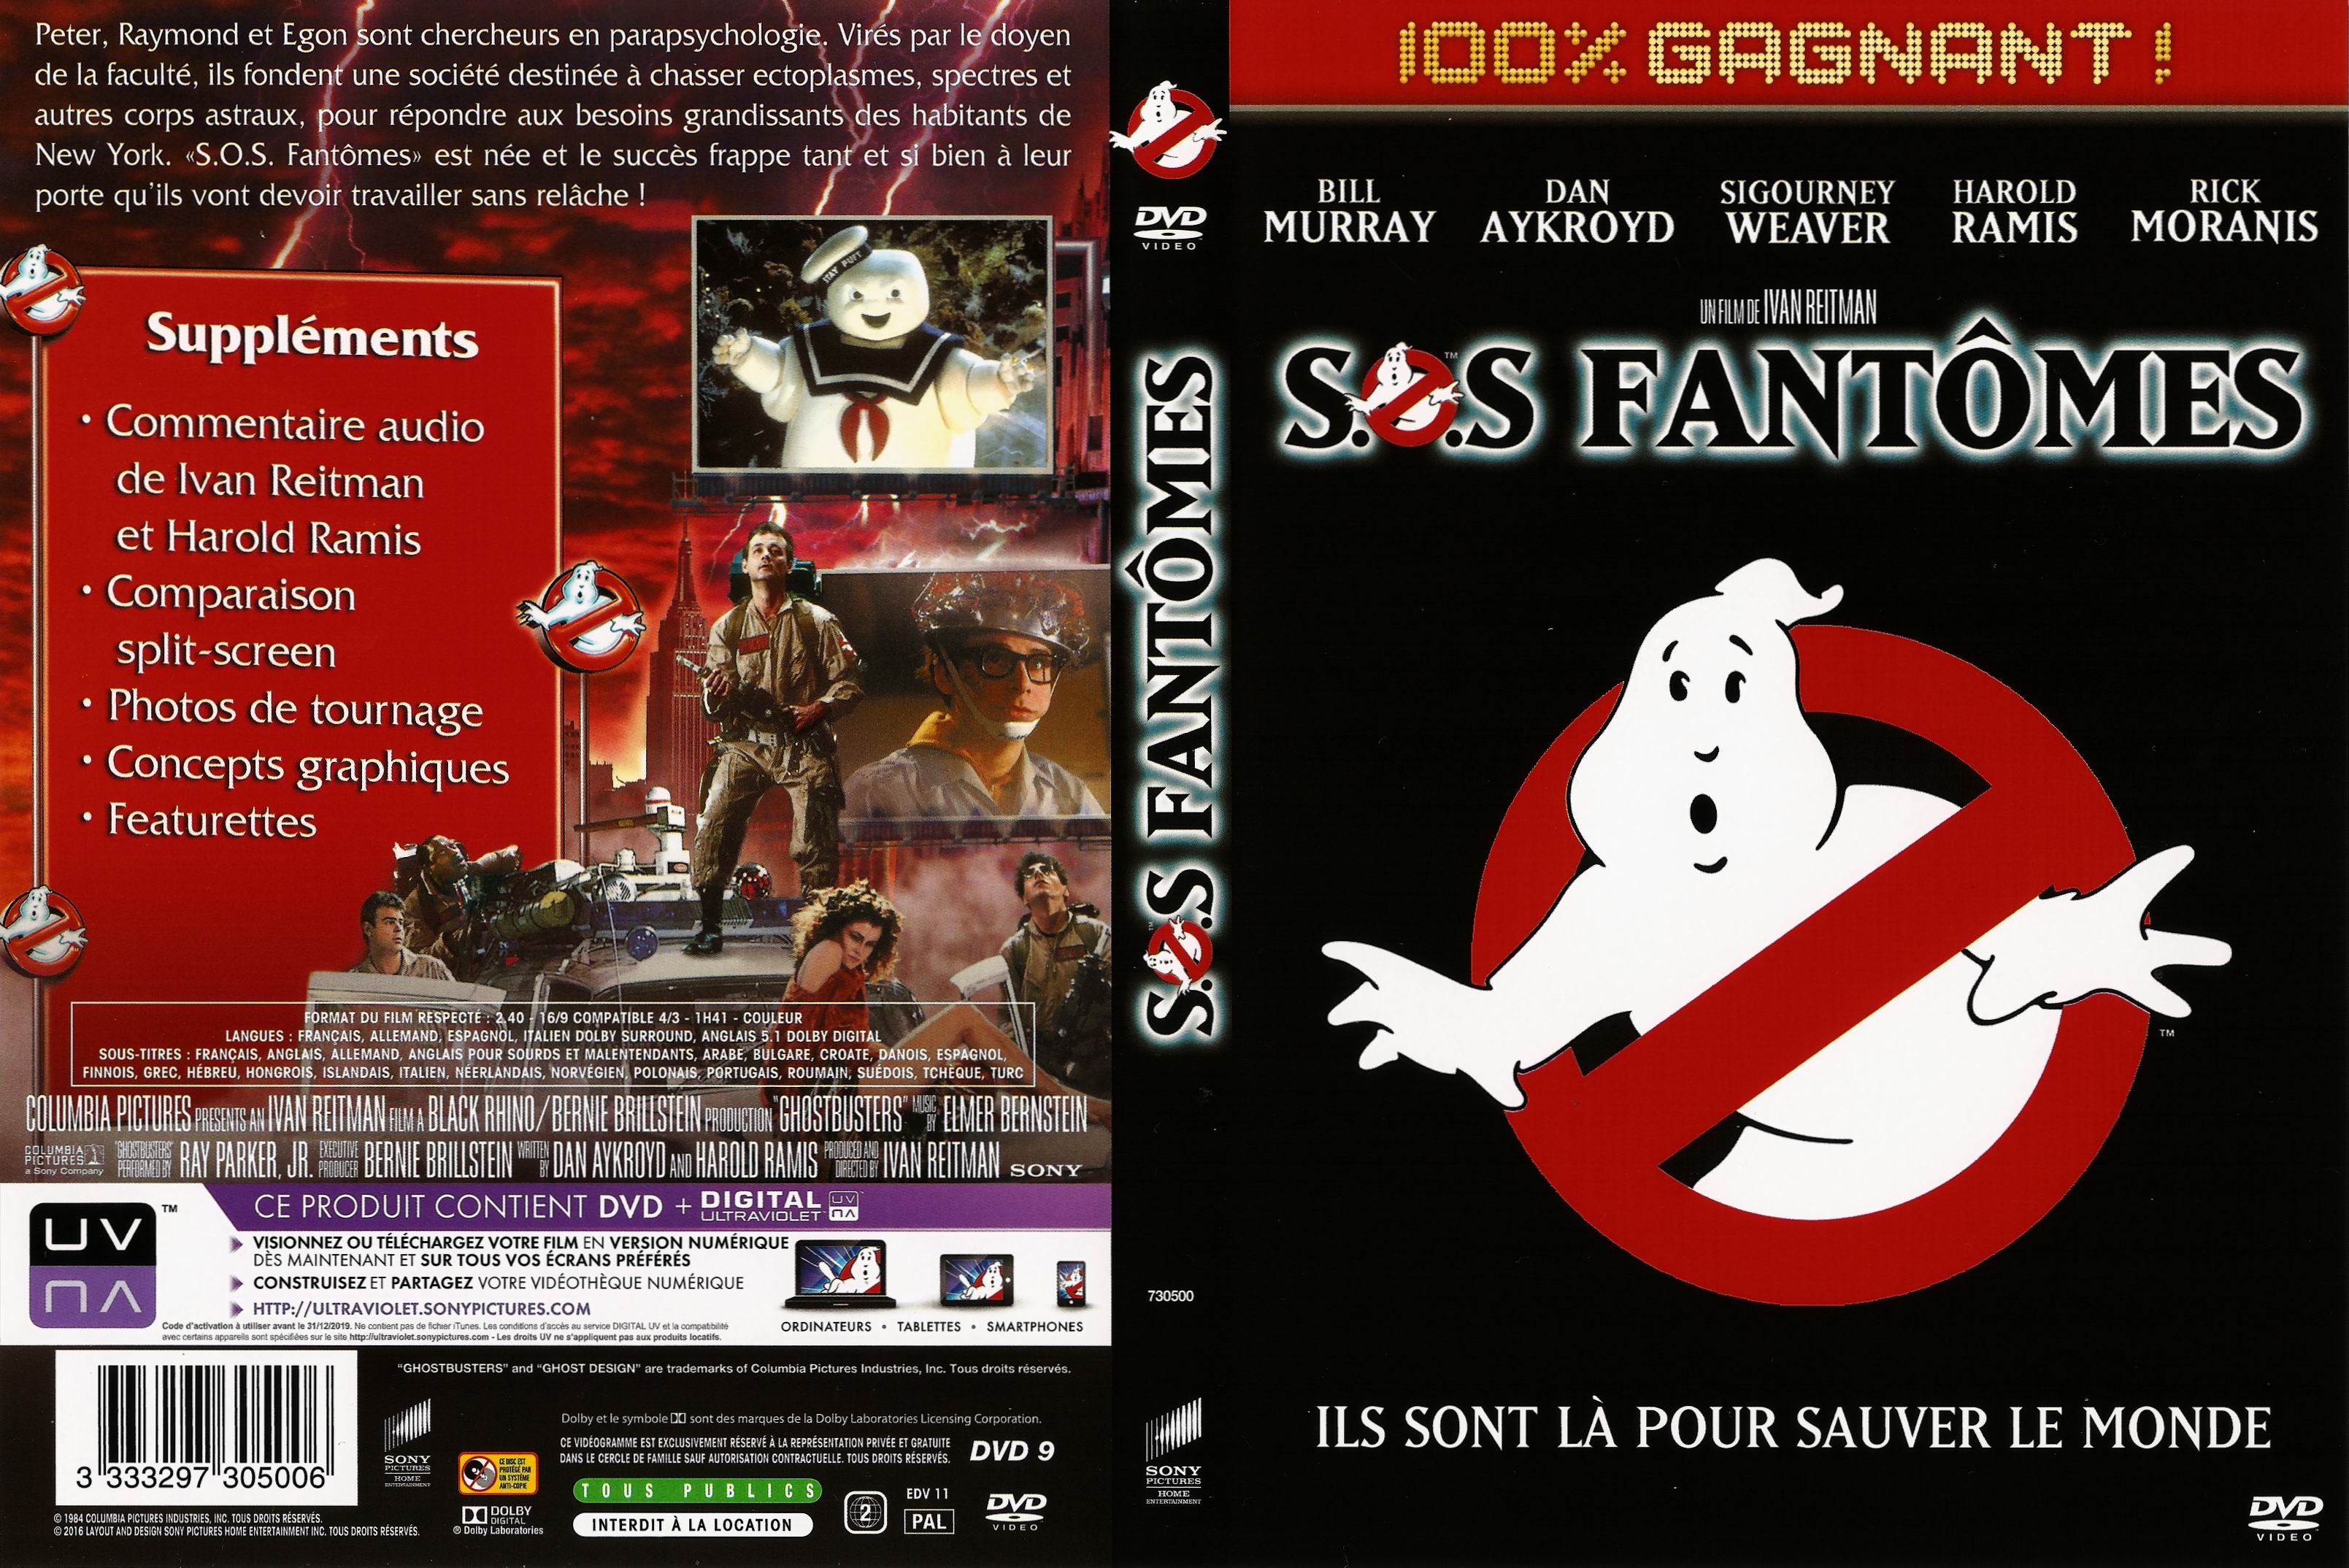 Jaquette DVD SOS fantomes v5